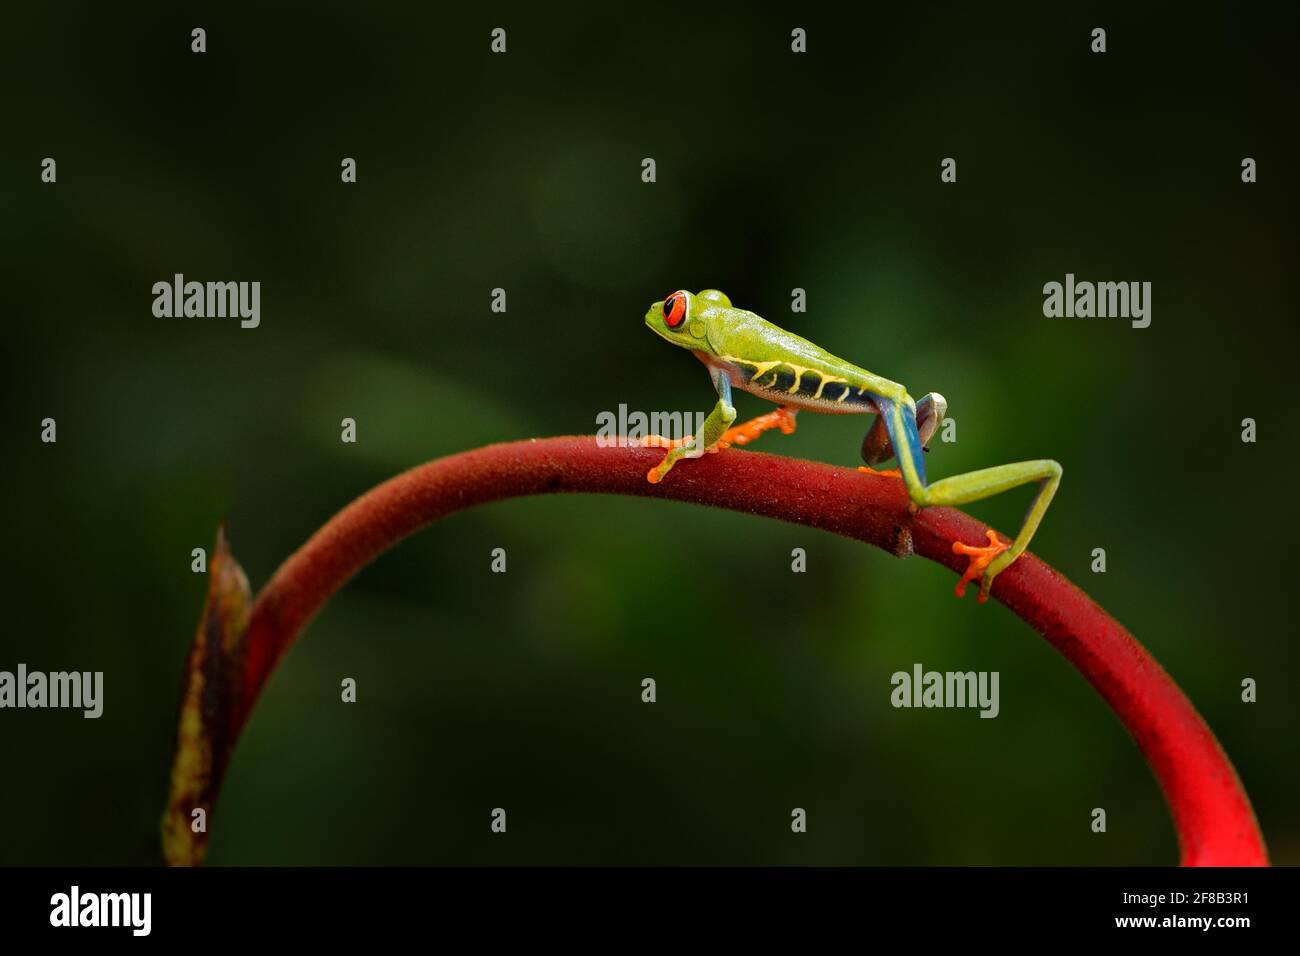 Agalychnis callidyas, rana dagli occhi rossi, animale con grandi occhi rossi, in habitat naturale, Panama. Bella anfibia nella vegetazione verde. Bellissima Foto Stock